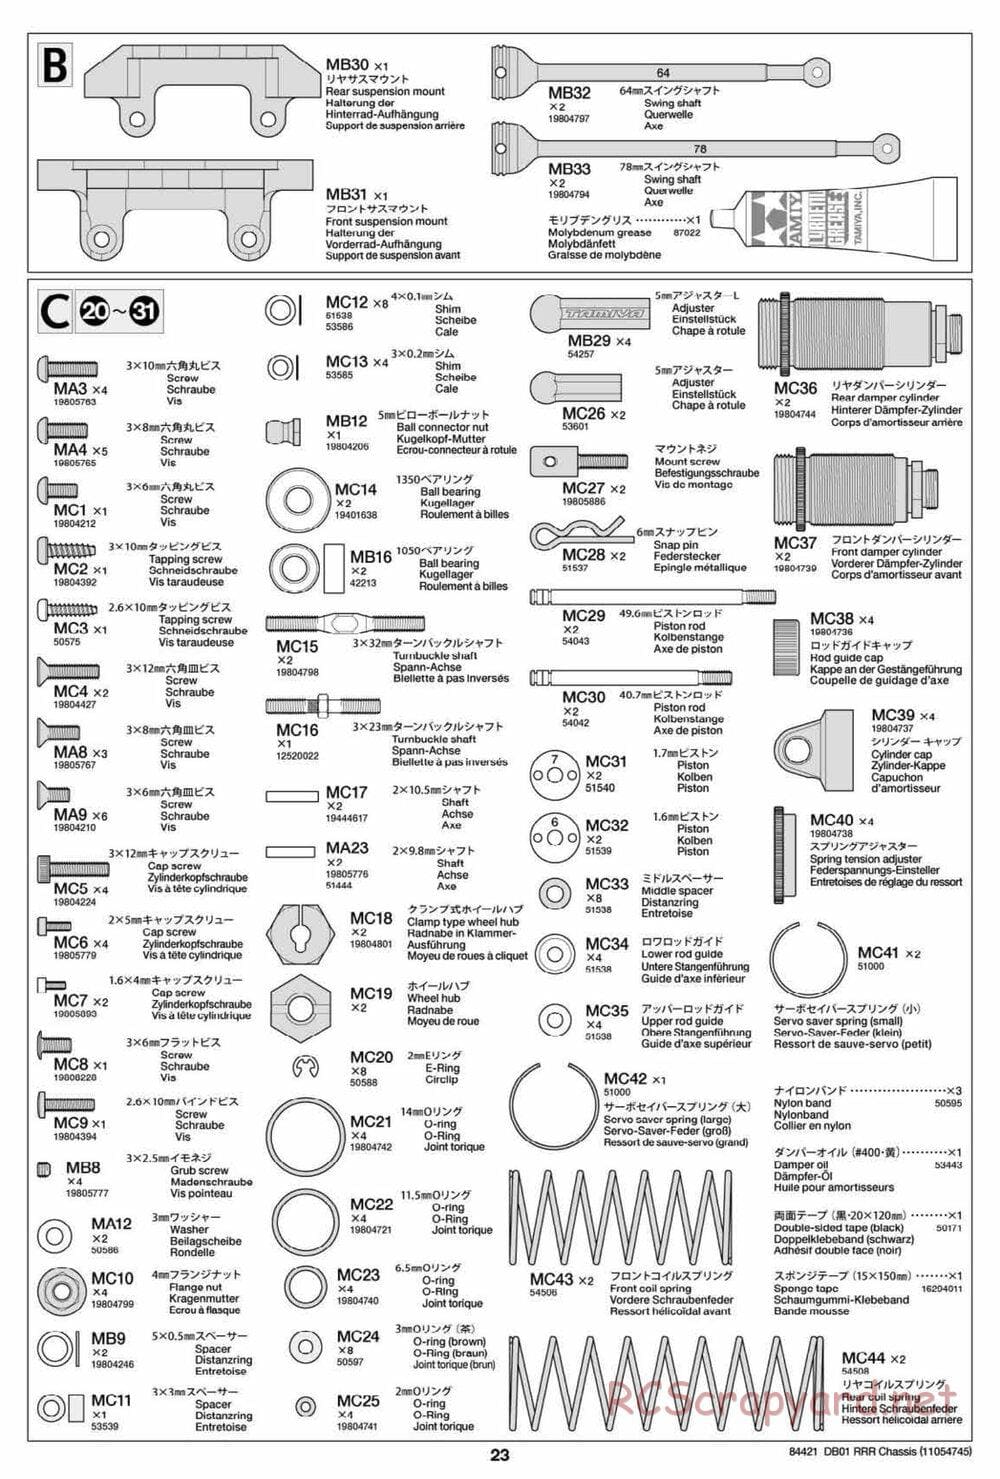 Tamiya - DB-01 RRR Chassis - Manual - Page 23